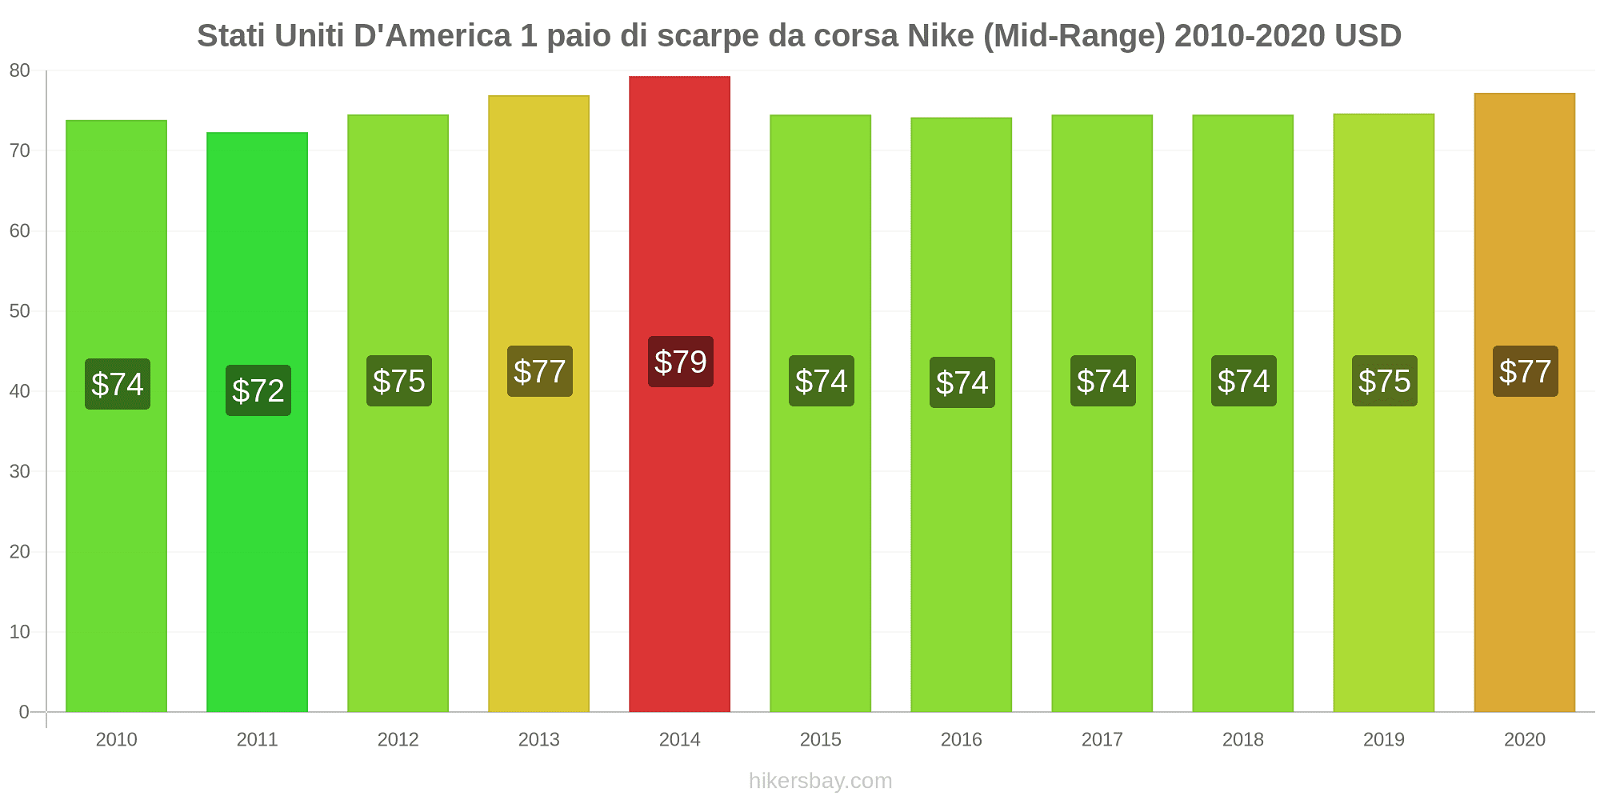 Stati Uniti D'America variazioni di prezzo 1 paio di scarpe da corsa Nike (simile) hikersbay.com